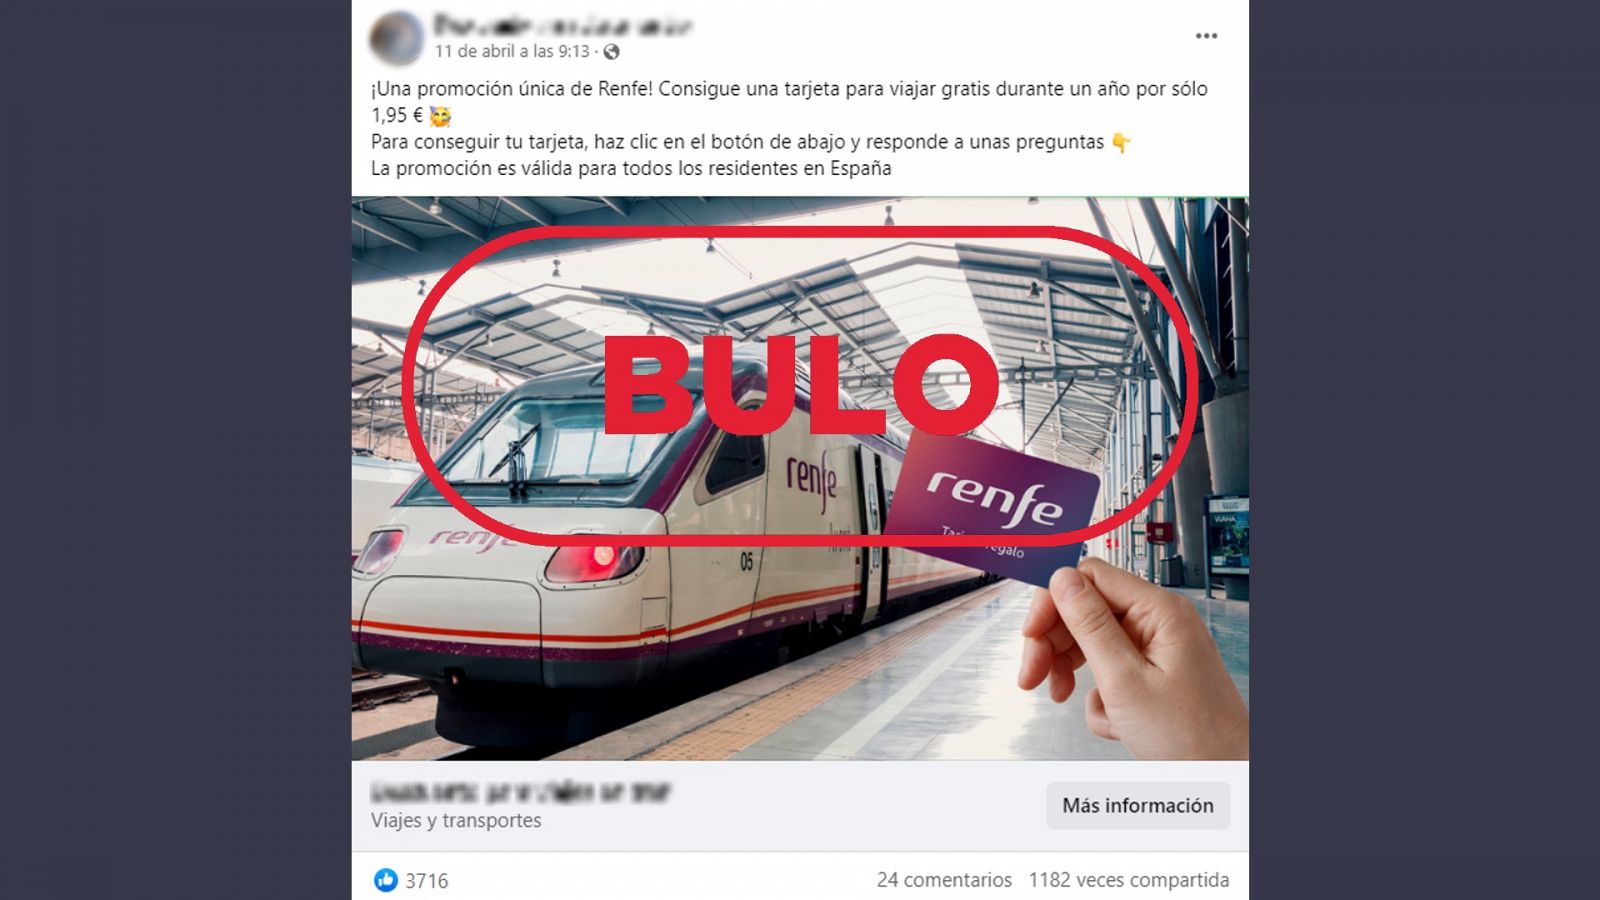 Publicación en Facebook que suplanta a Renfe para publicitar el falso sorteo de una tarjeta para viajar gratis durante un año. Con el sello bulo en rojo.